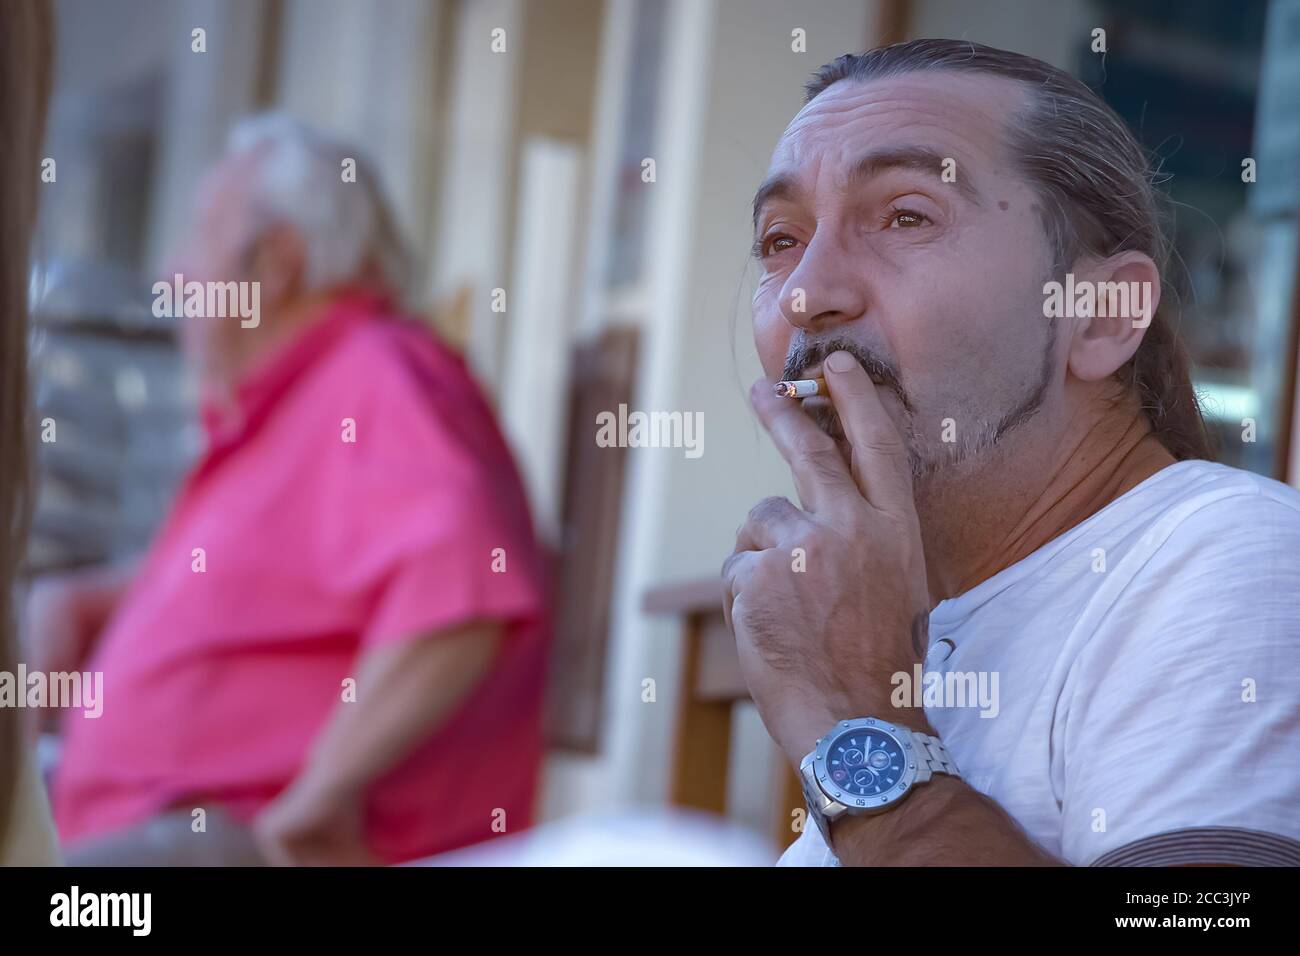 Huelva, Spanien - 17. August 2020: Mann raucht eine Zigarette auf einer Barterrasse Stockfoto